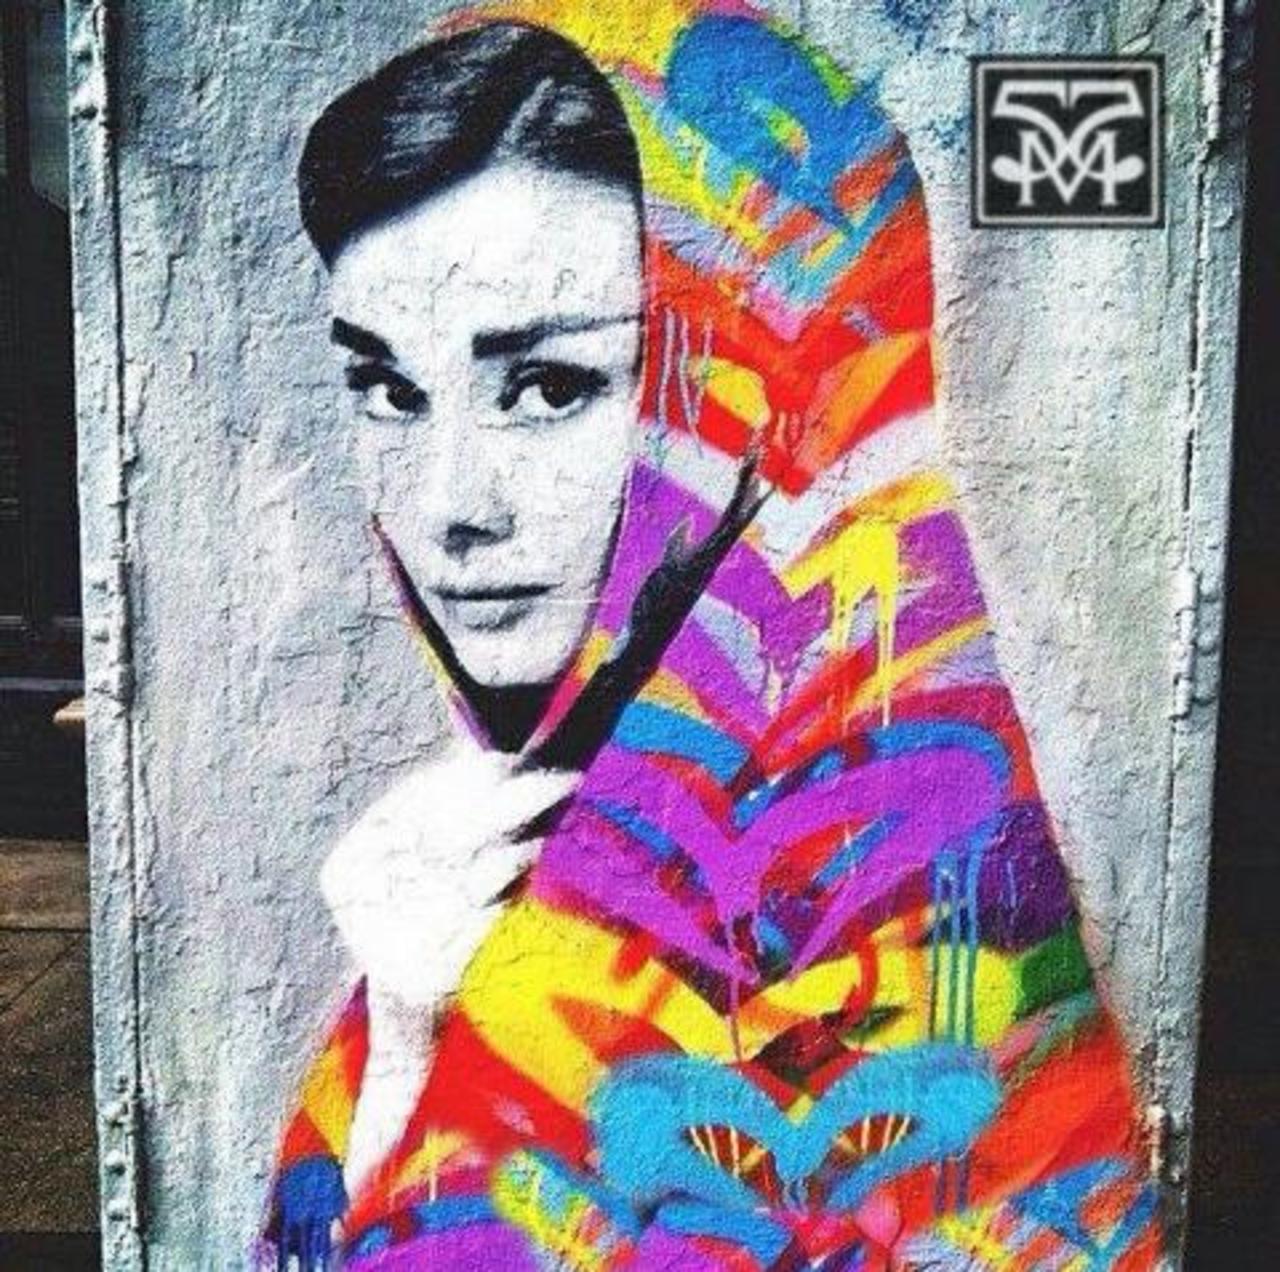 Audrey Hepburn, Awesome Mural! #55murals #streetart #graffiti #mural #murals #audreyhepburn #icon #hollywood http://t.co/Ht0slLWsRP